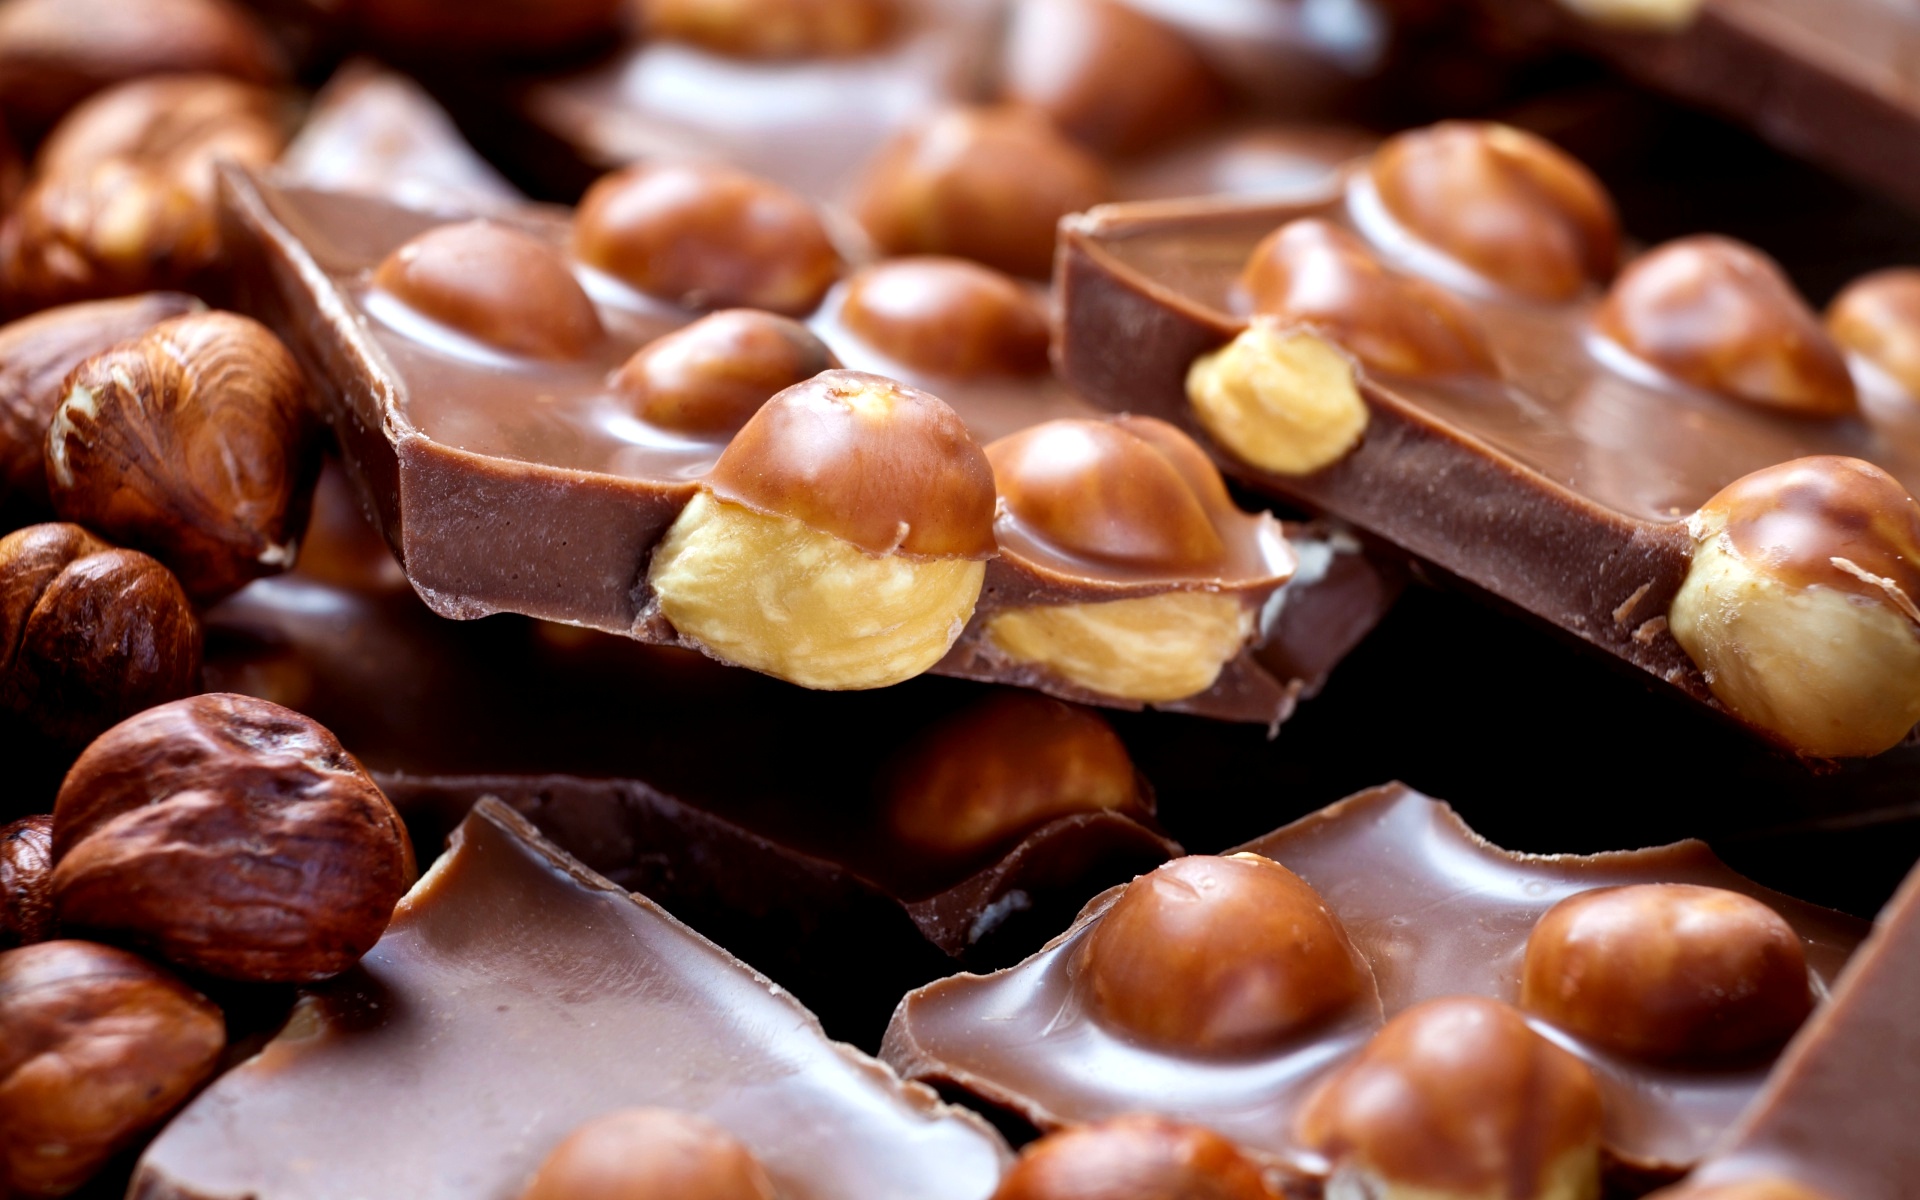 Україна буде нарощувати експортні поставки шоколаду – аналітики компанії Pro-Consulting. Сегодня